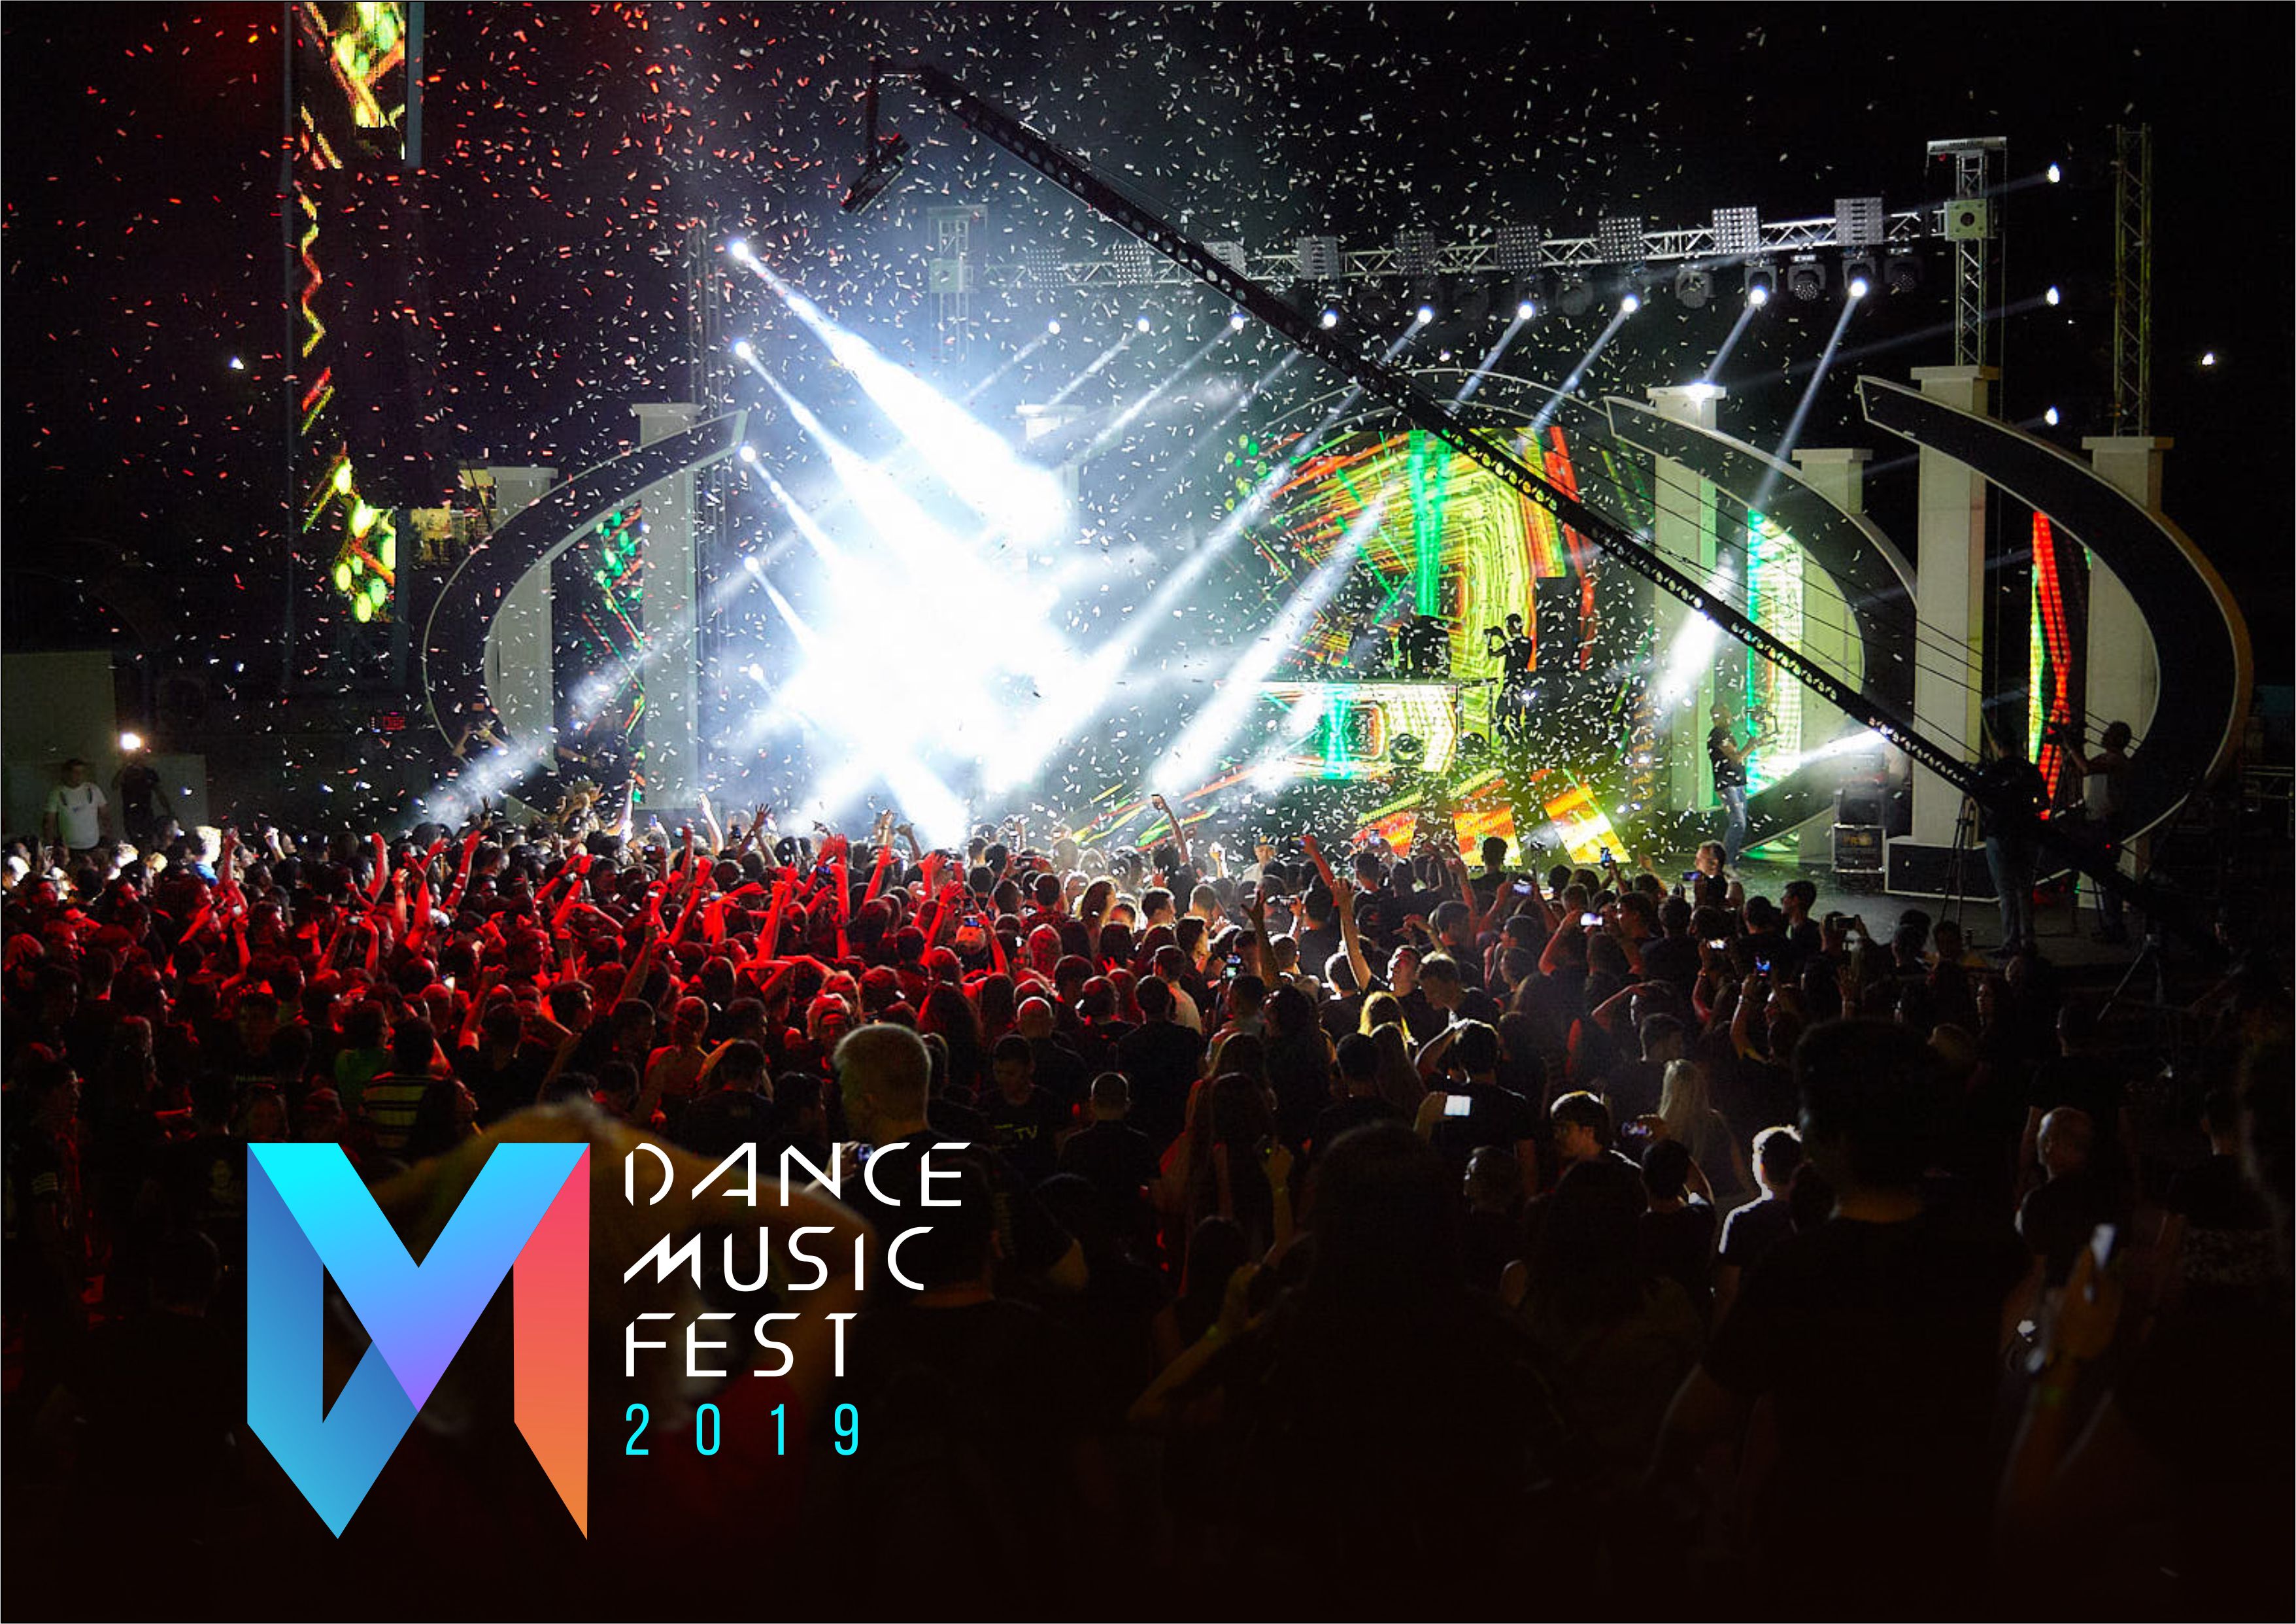 Dance Music Fest 2019 объявляет о начале приёма заявок для участия в грандиозном музыкальном событии нашей страны!